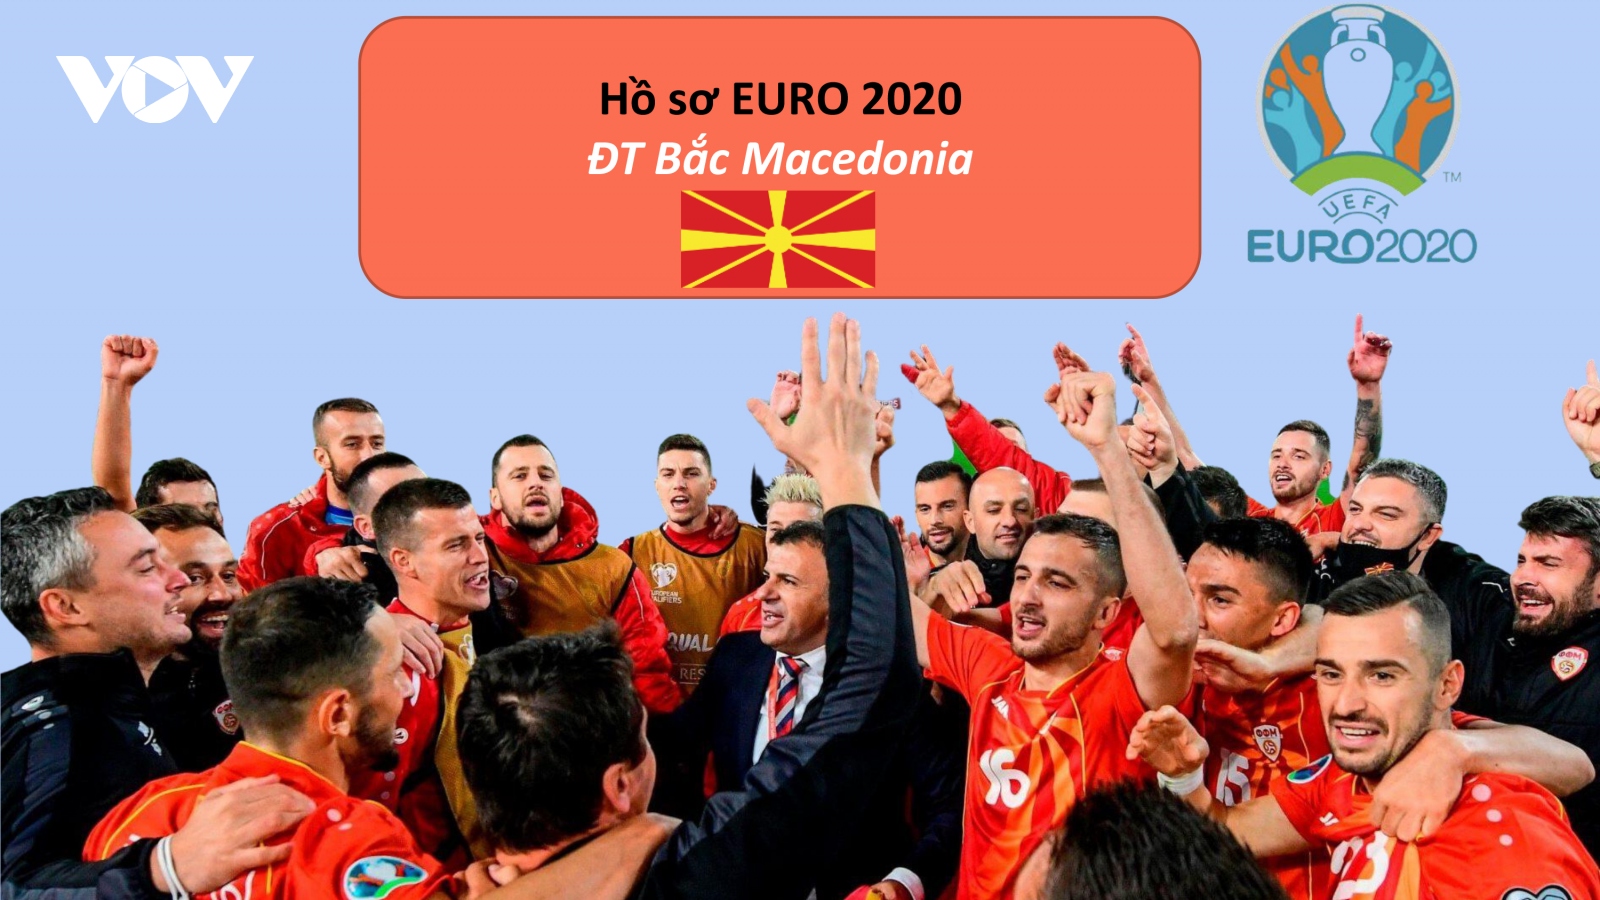 Hồ sơ các ĐT dự EURO 2020: Đội tuyển Bắc Macedonia